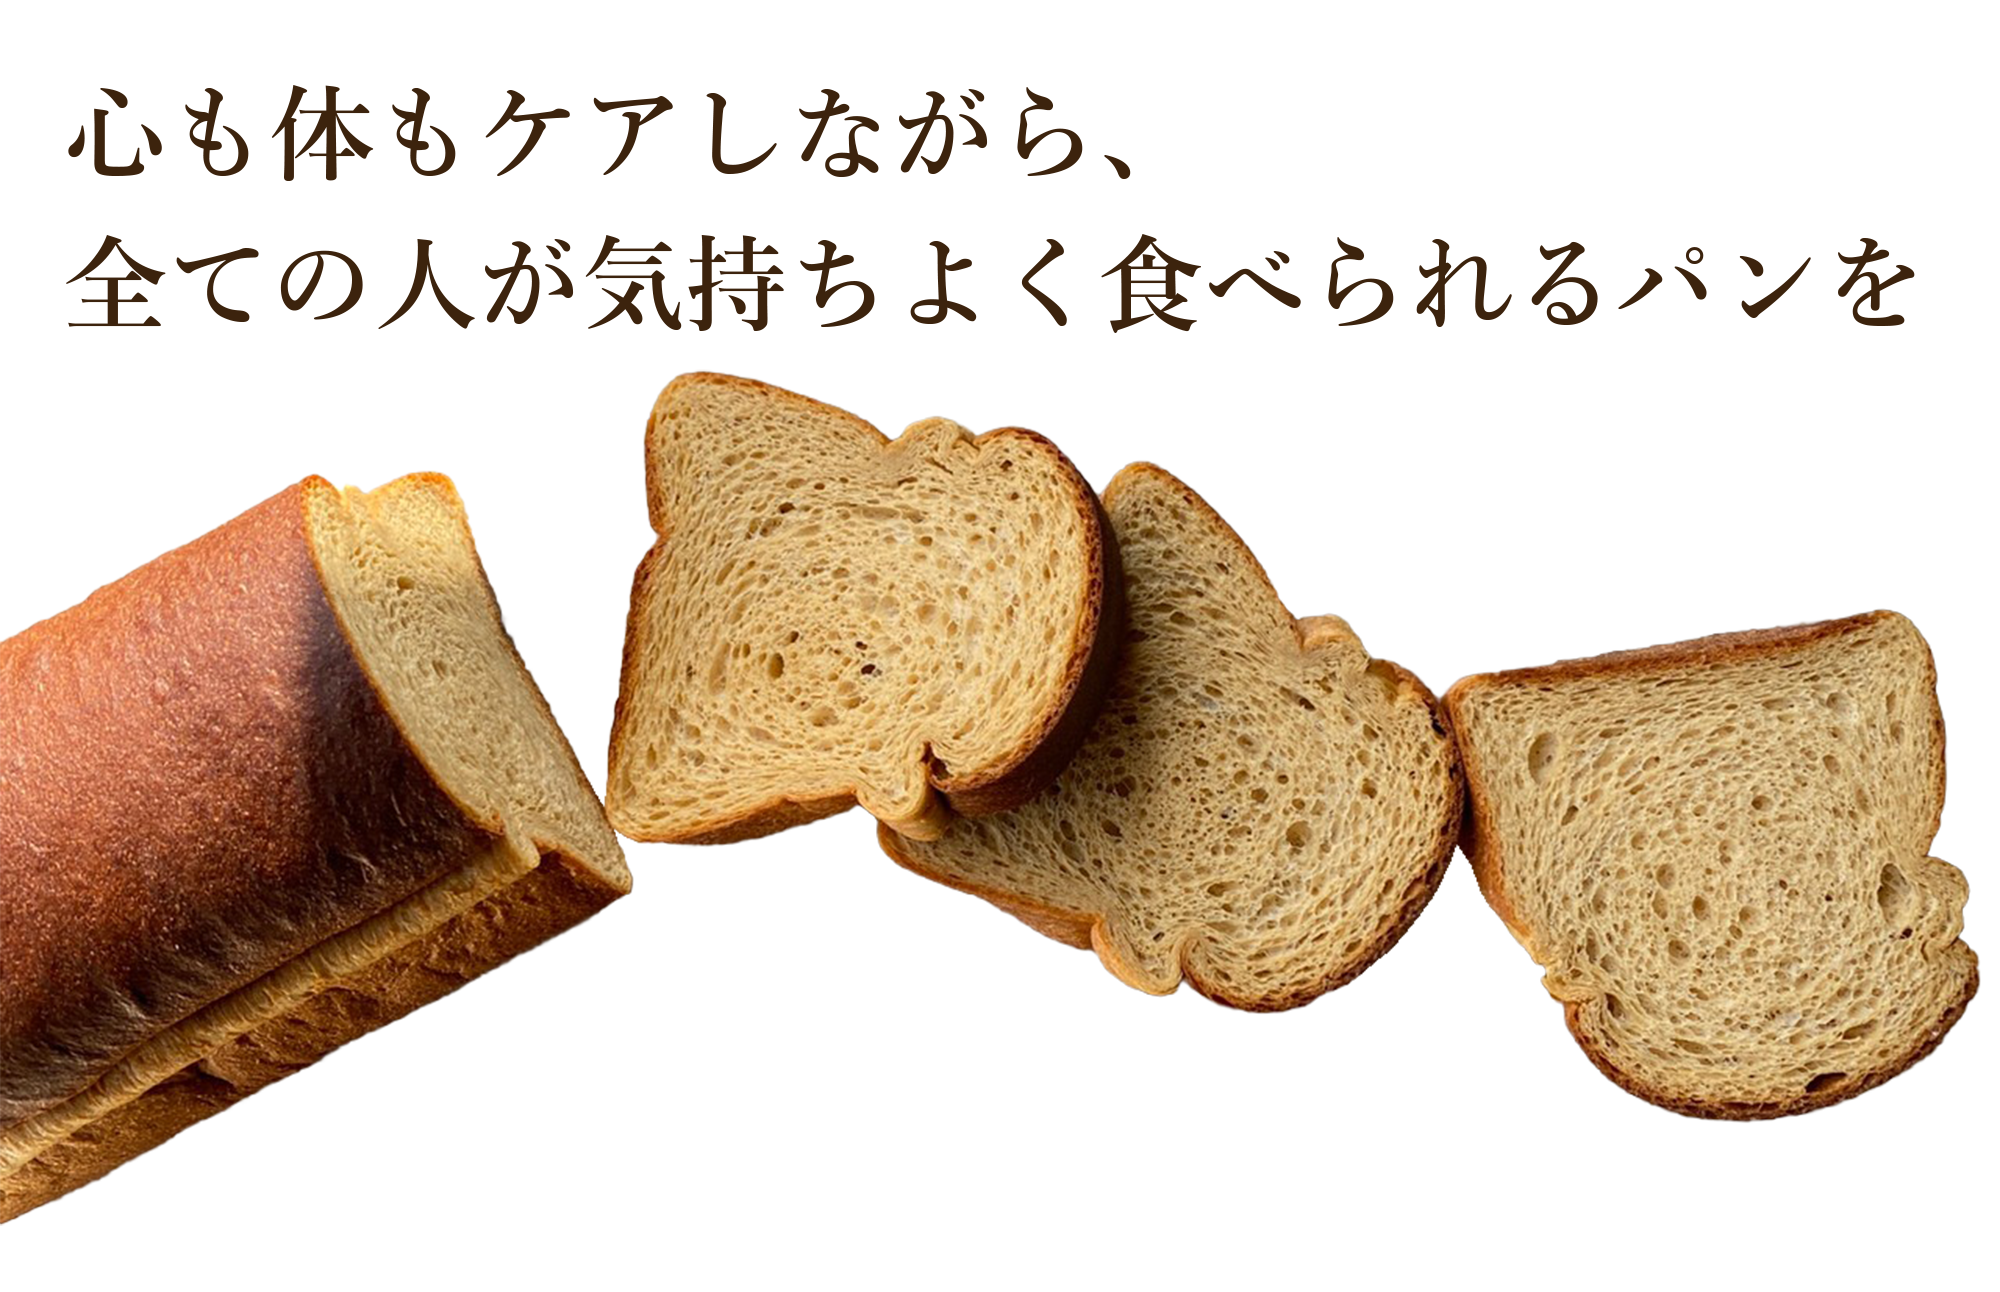 心も体もケアしながら、全ての人が気持ちよく食べられるパンを | 超低糖質ブランパン専門店Switch